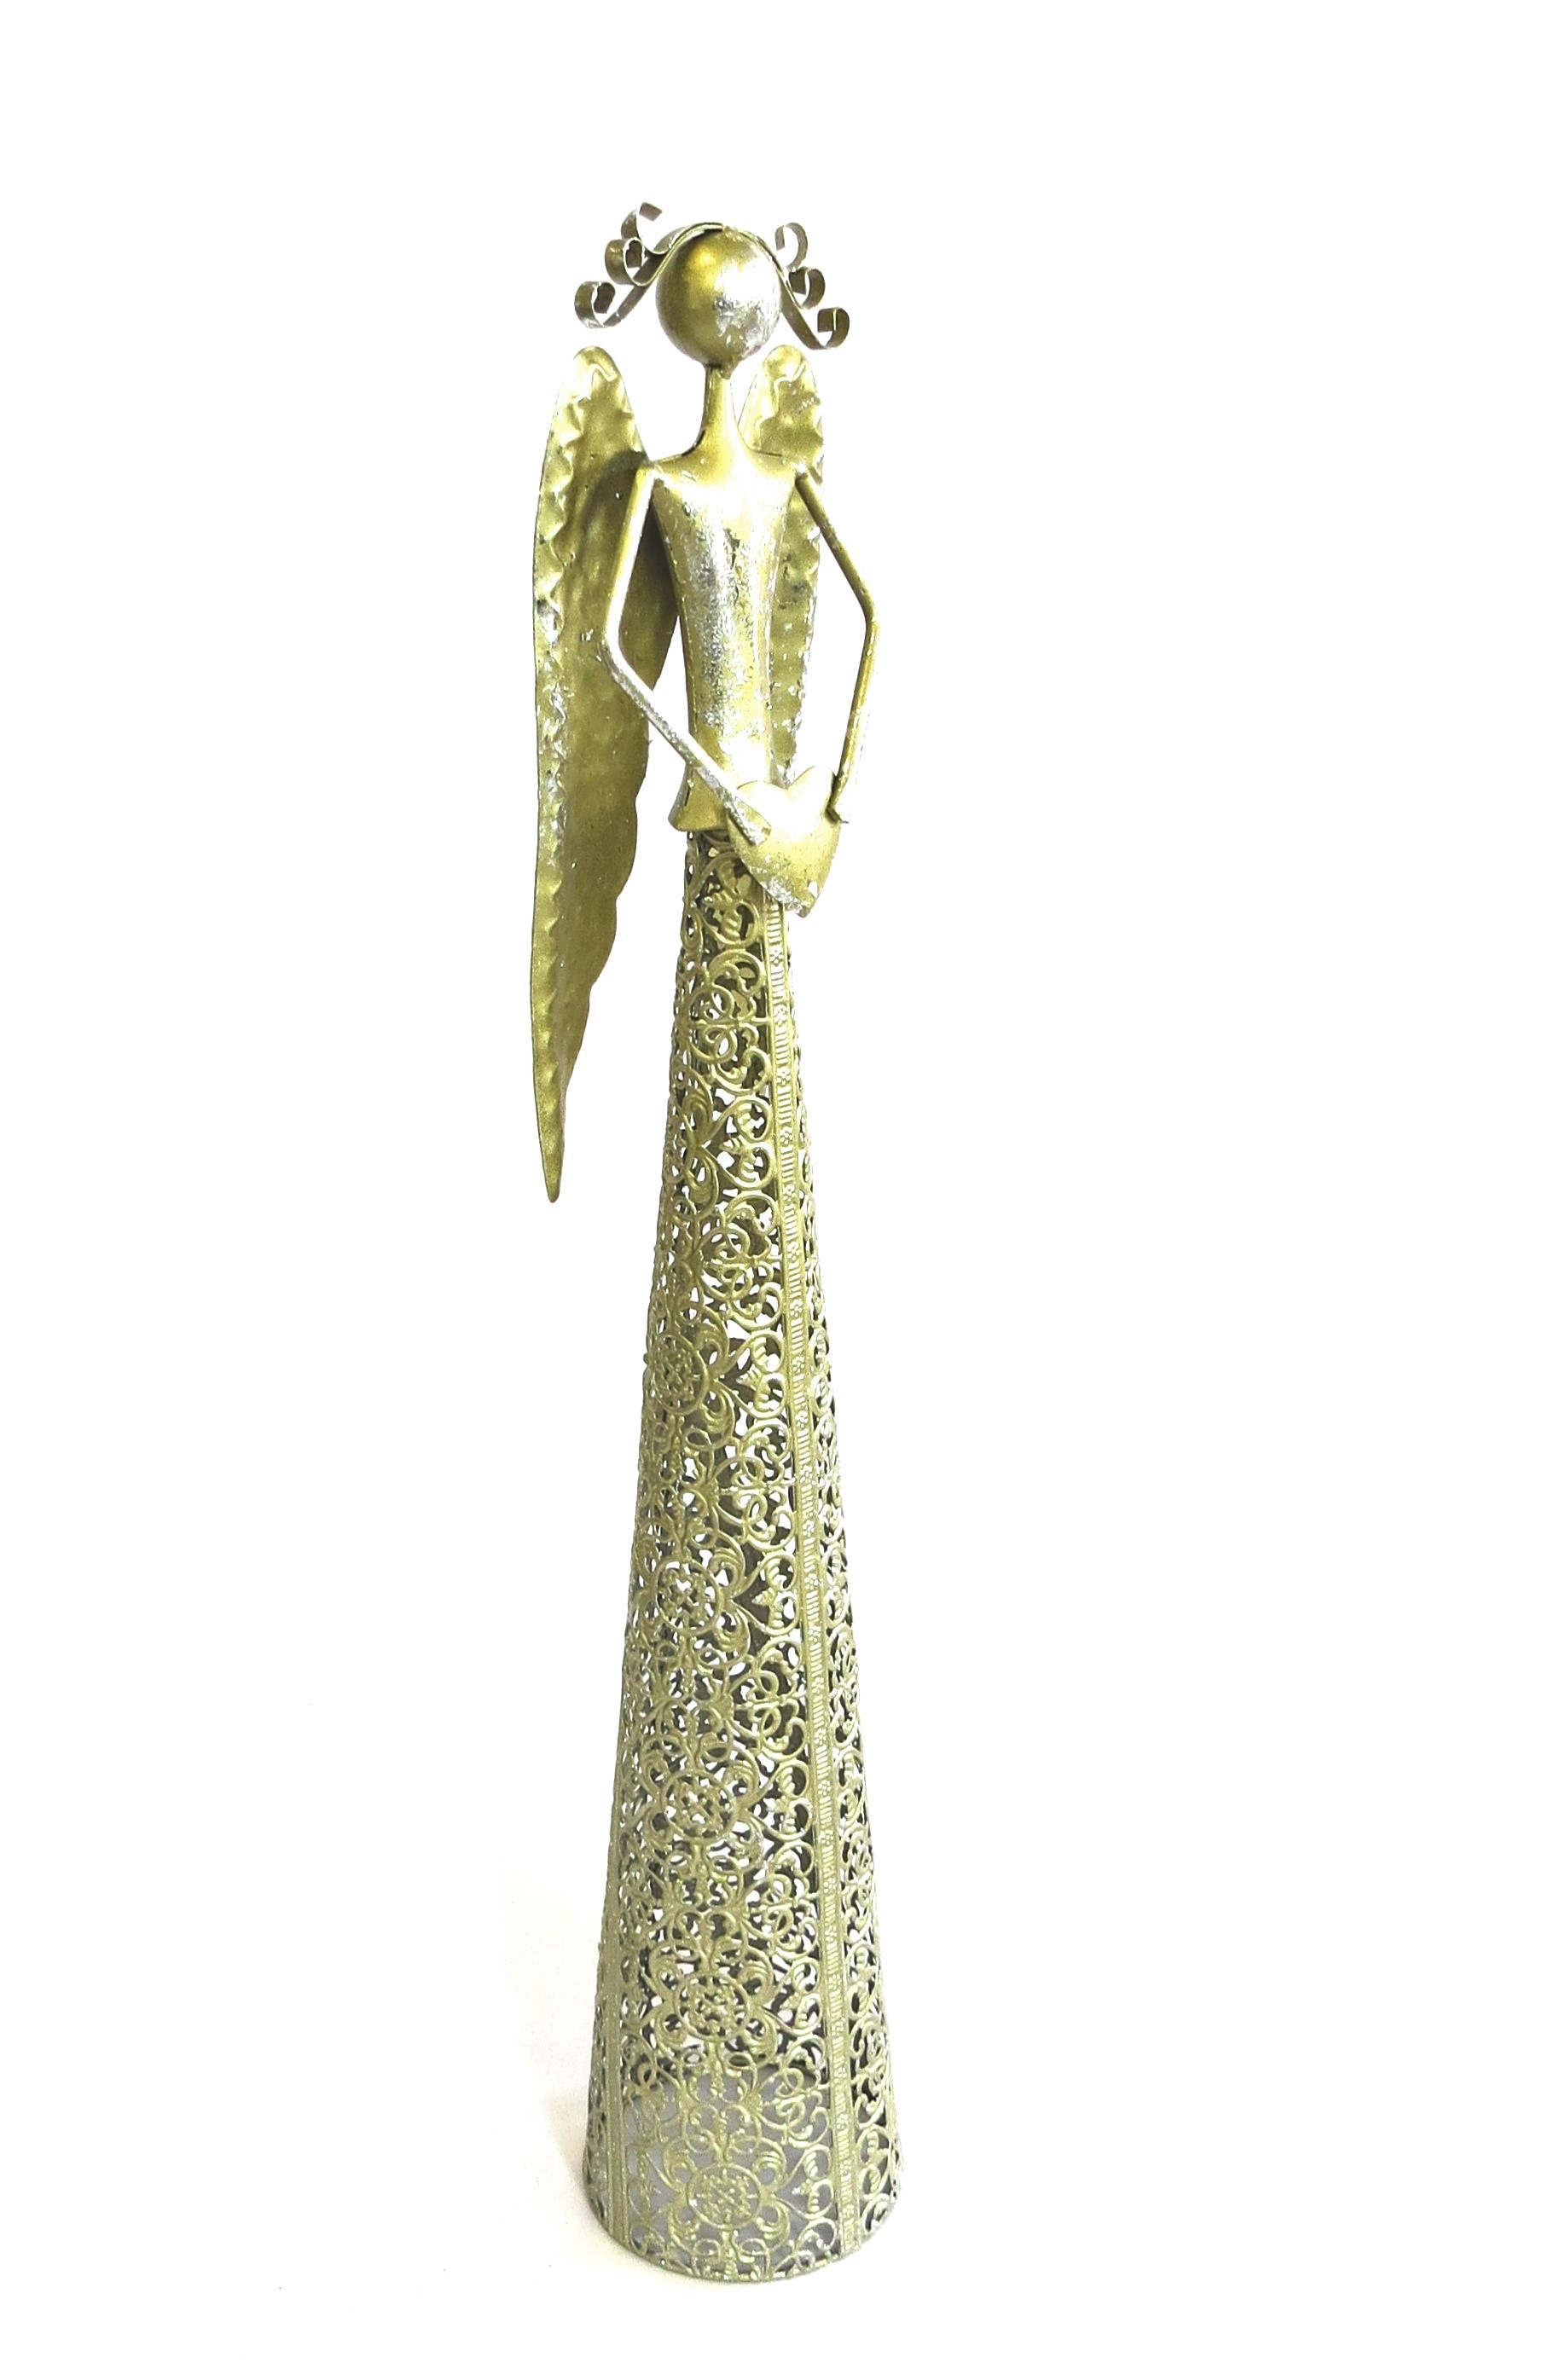 Metall Engel mit Herz Gold XL Weihnachten Deko 56 cm Antik Stil |  Shabbyweiss